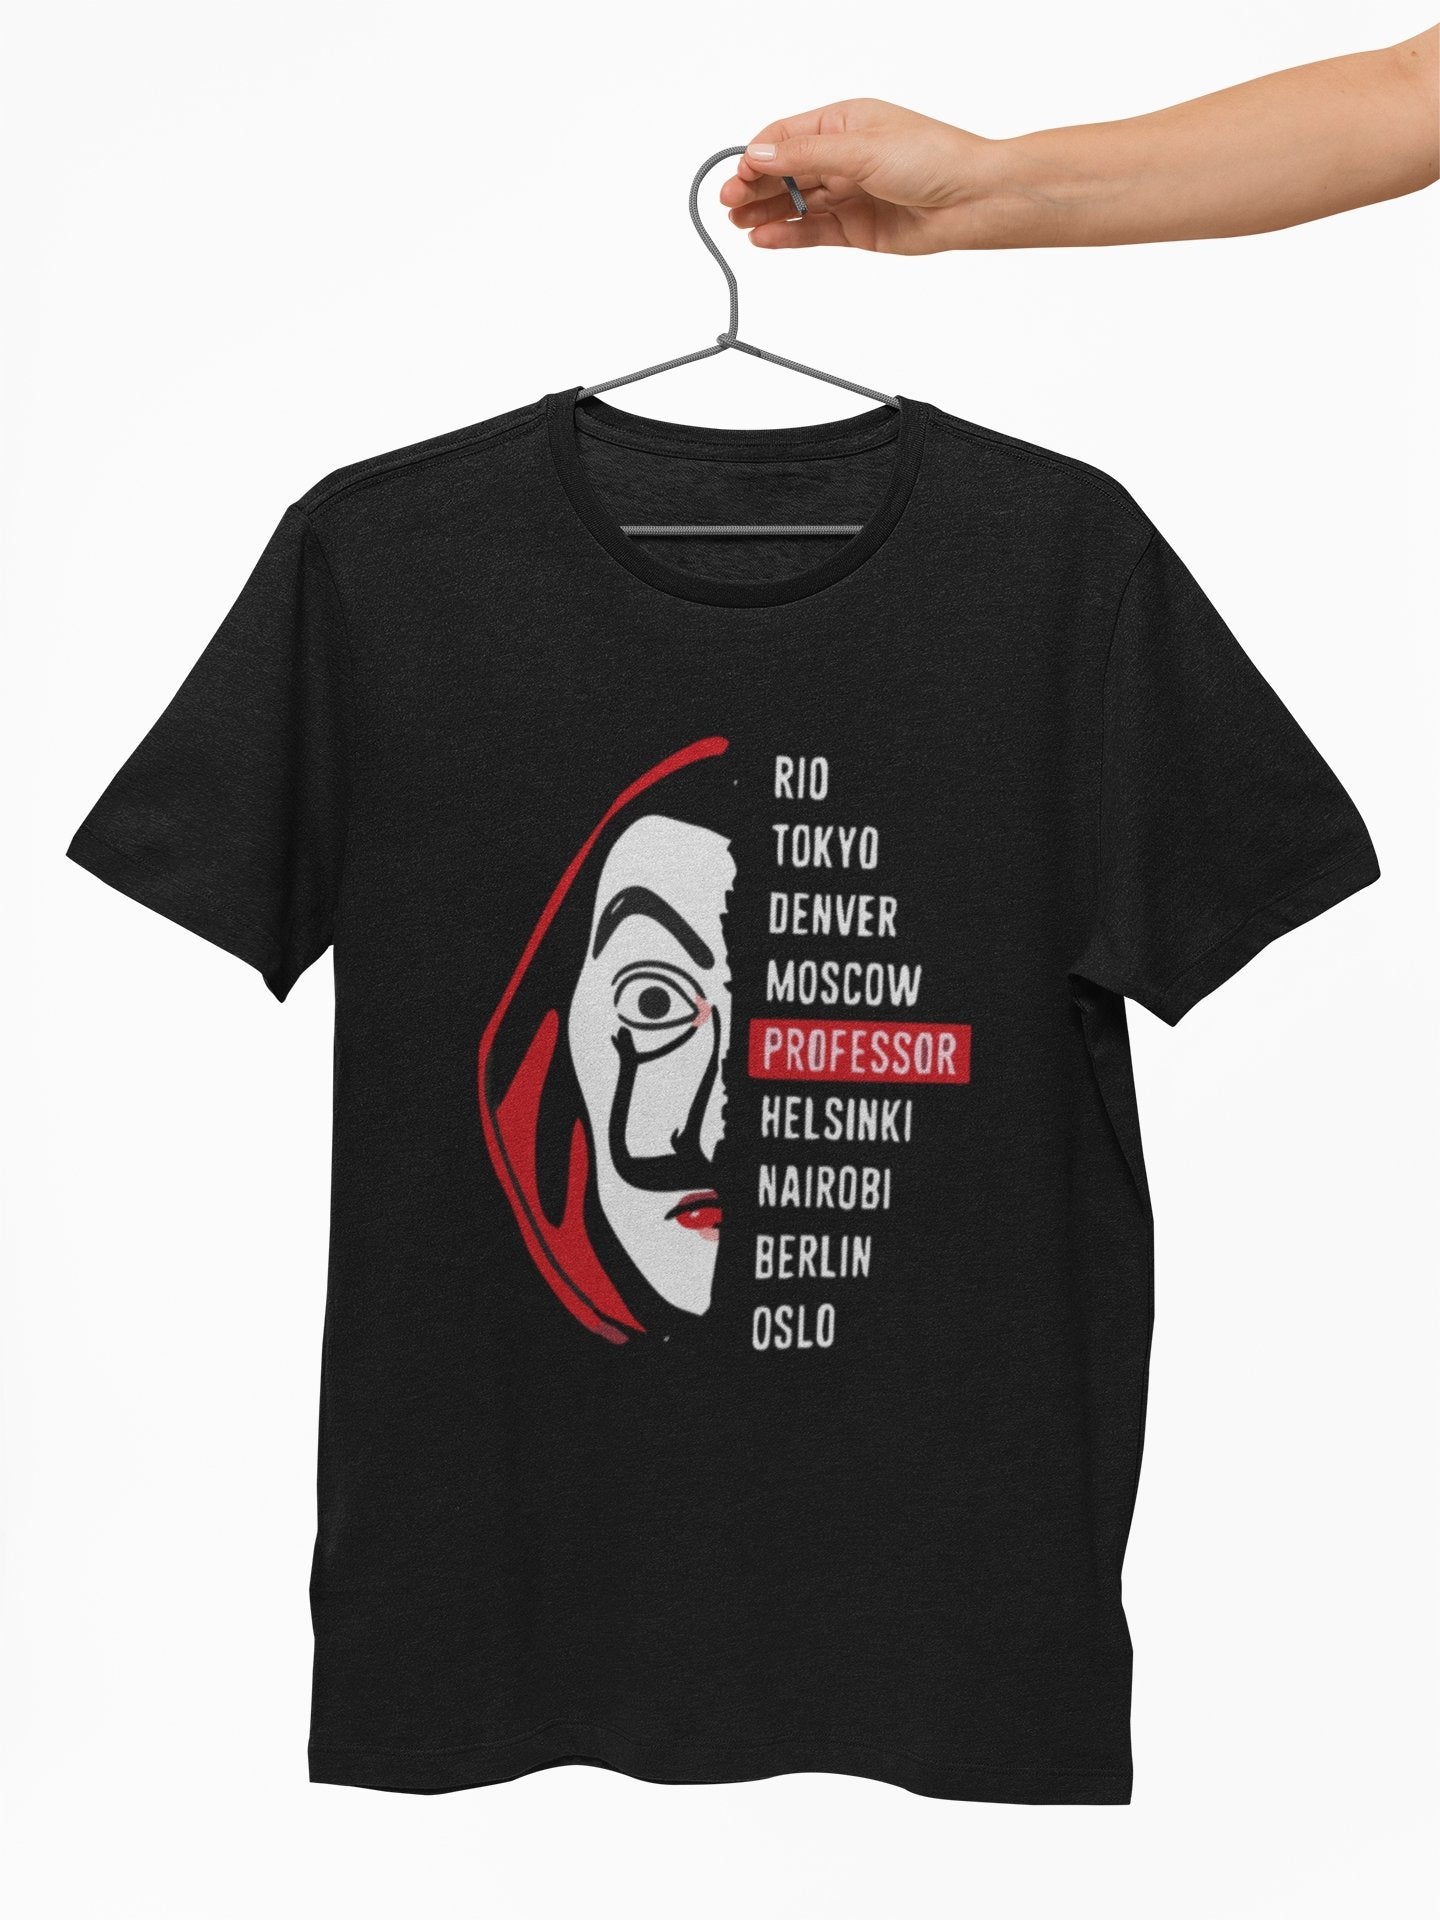 Professor Money Heist Graphic T shirt for Men - Insane Tees